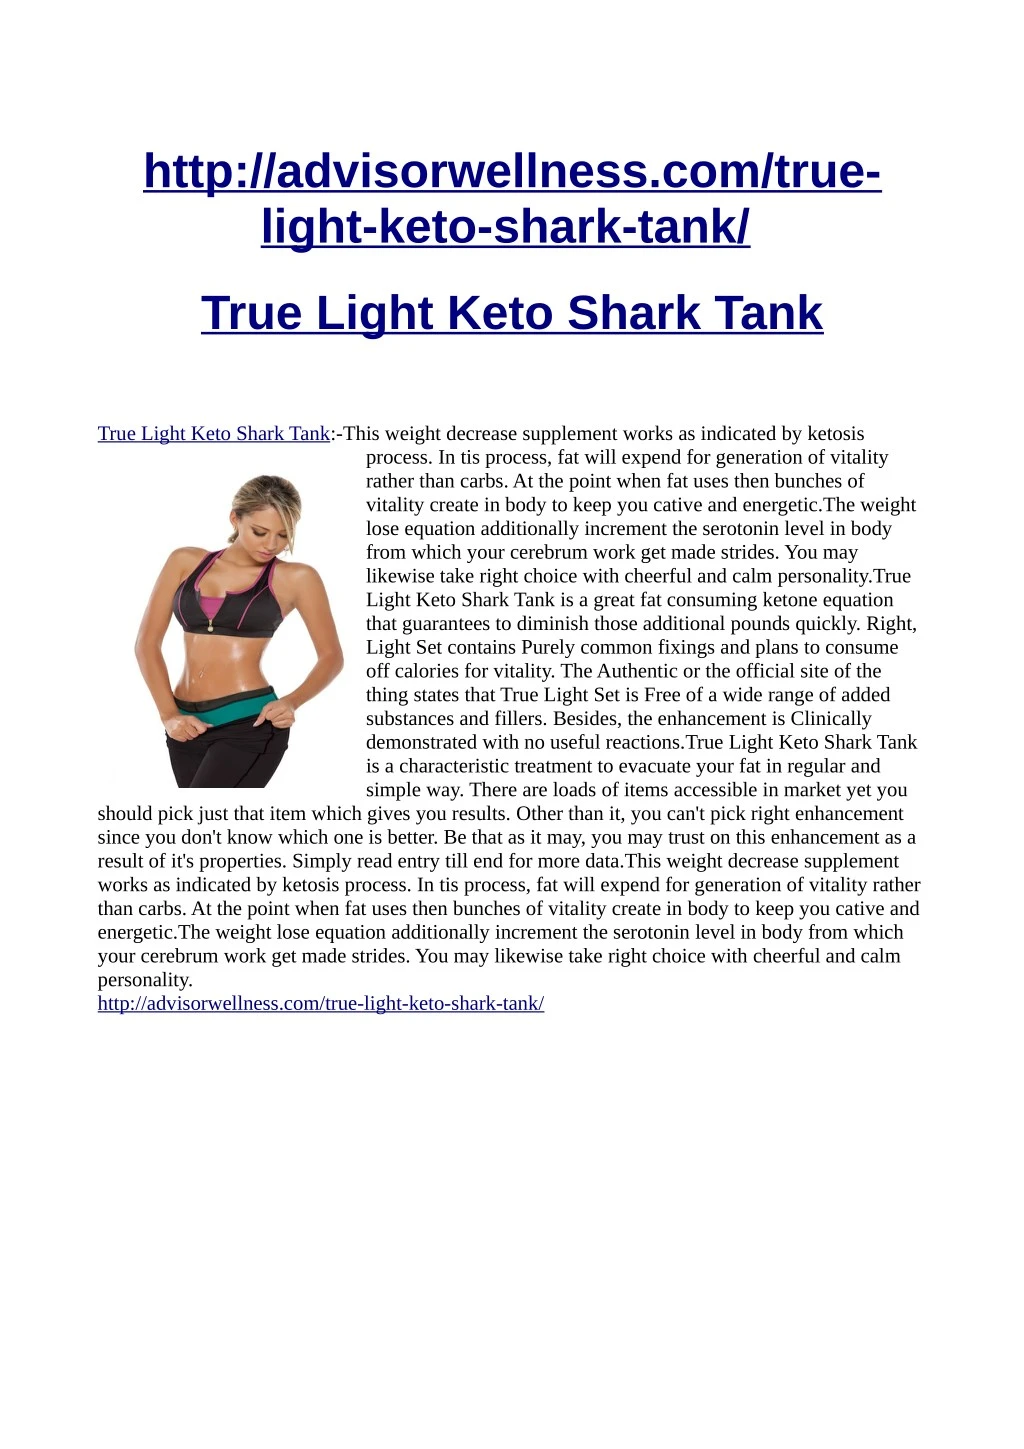 http advisorwellness com true light keto shark